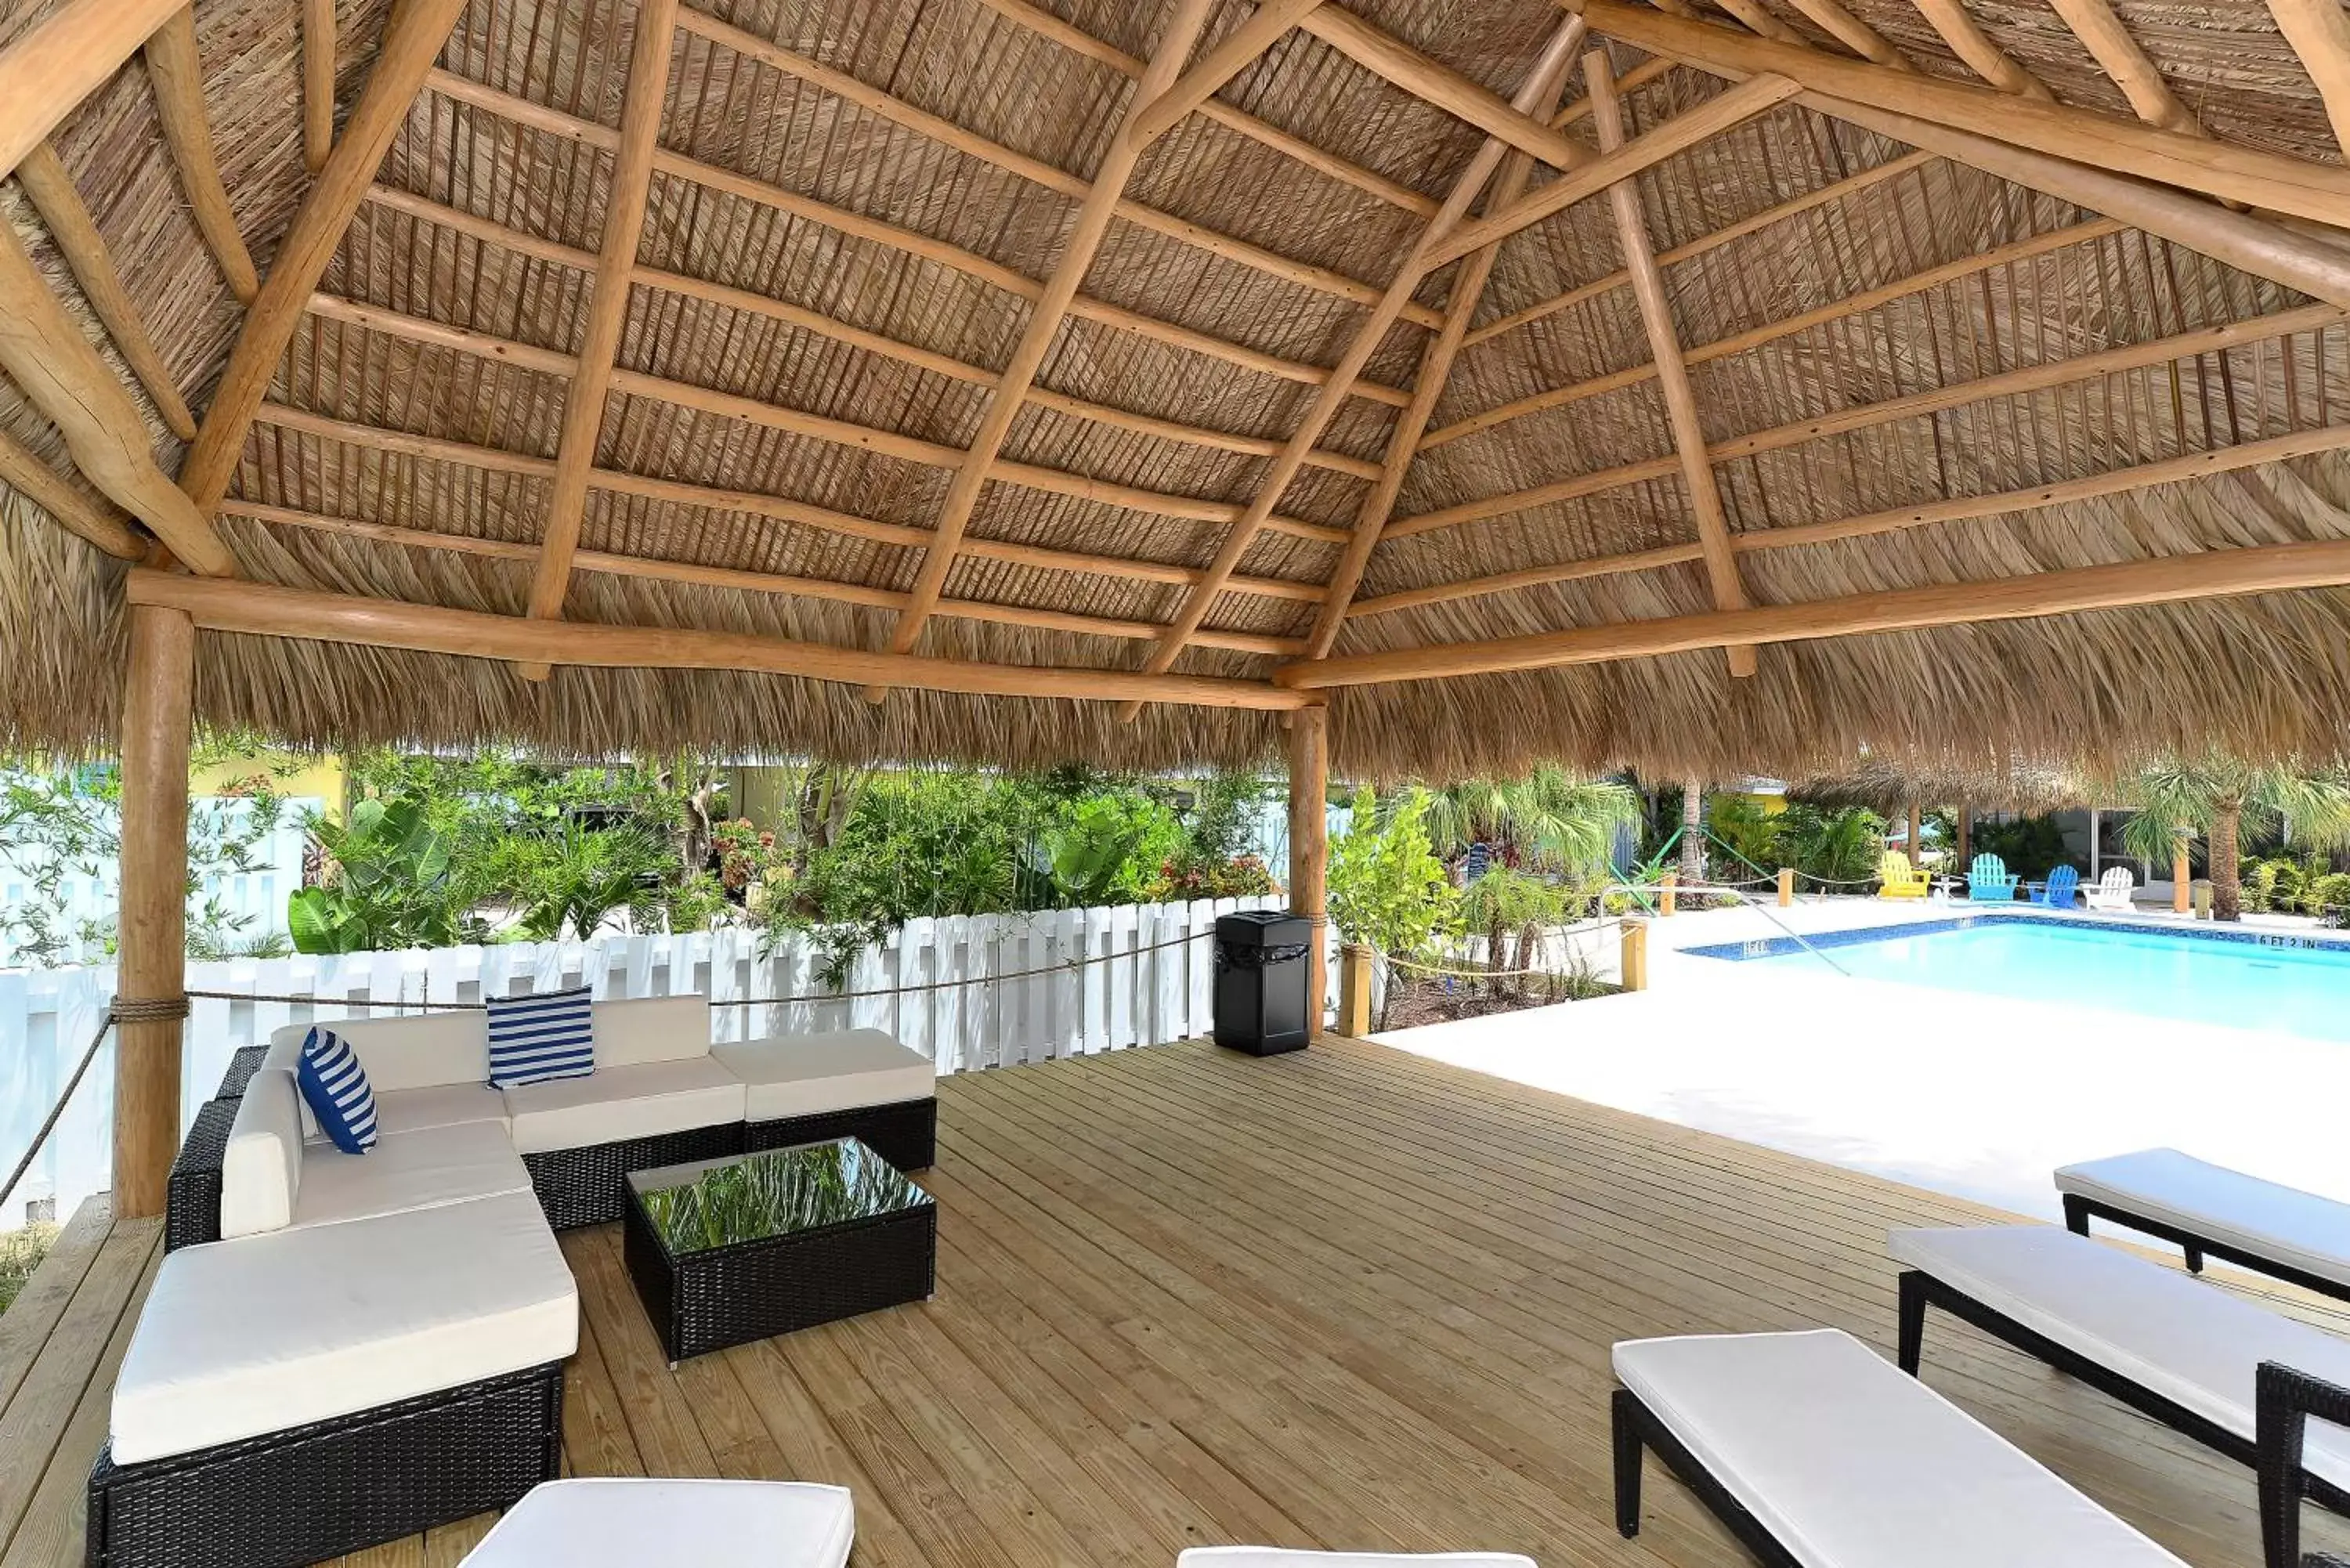 Garden, Patio/Outdoor Area in Siesta Key Palms Resort